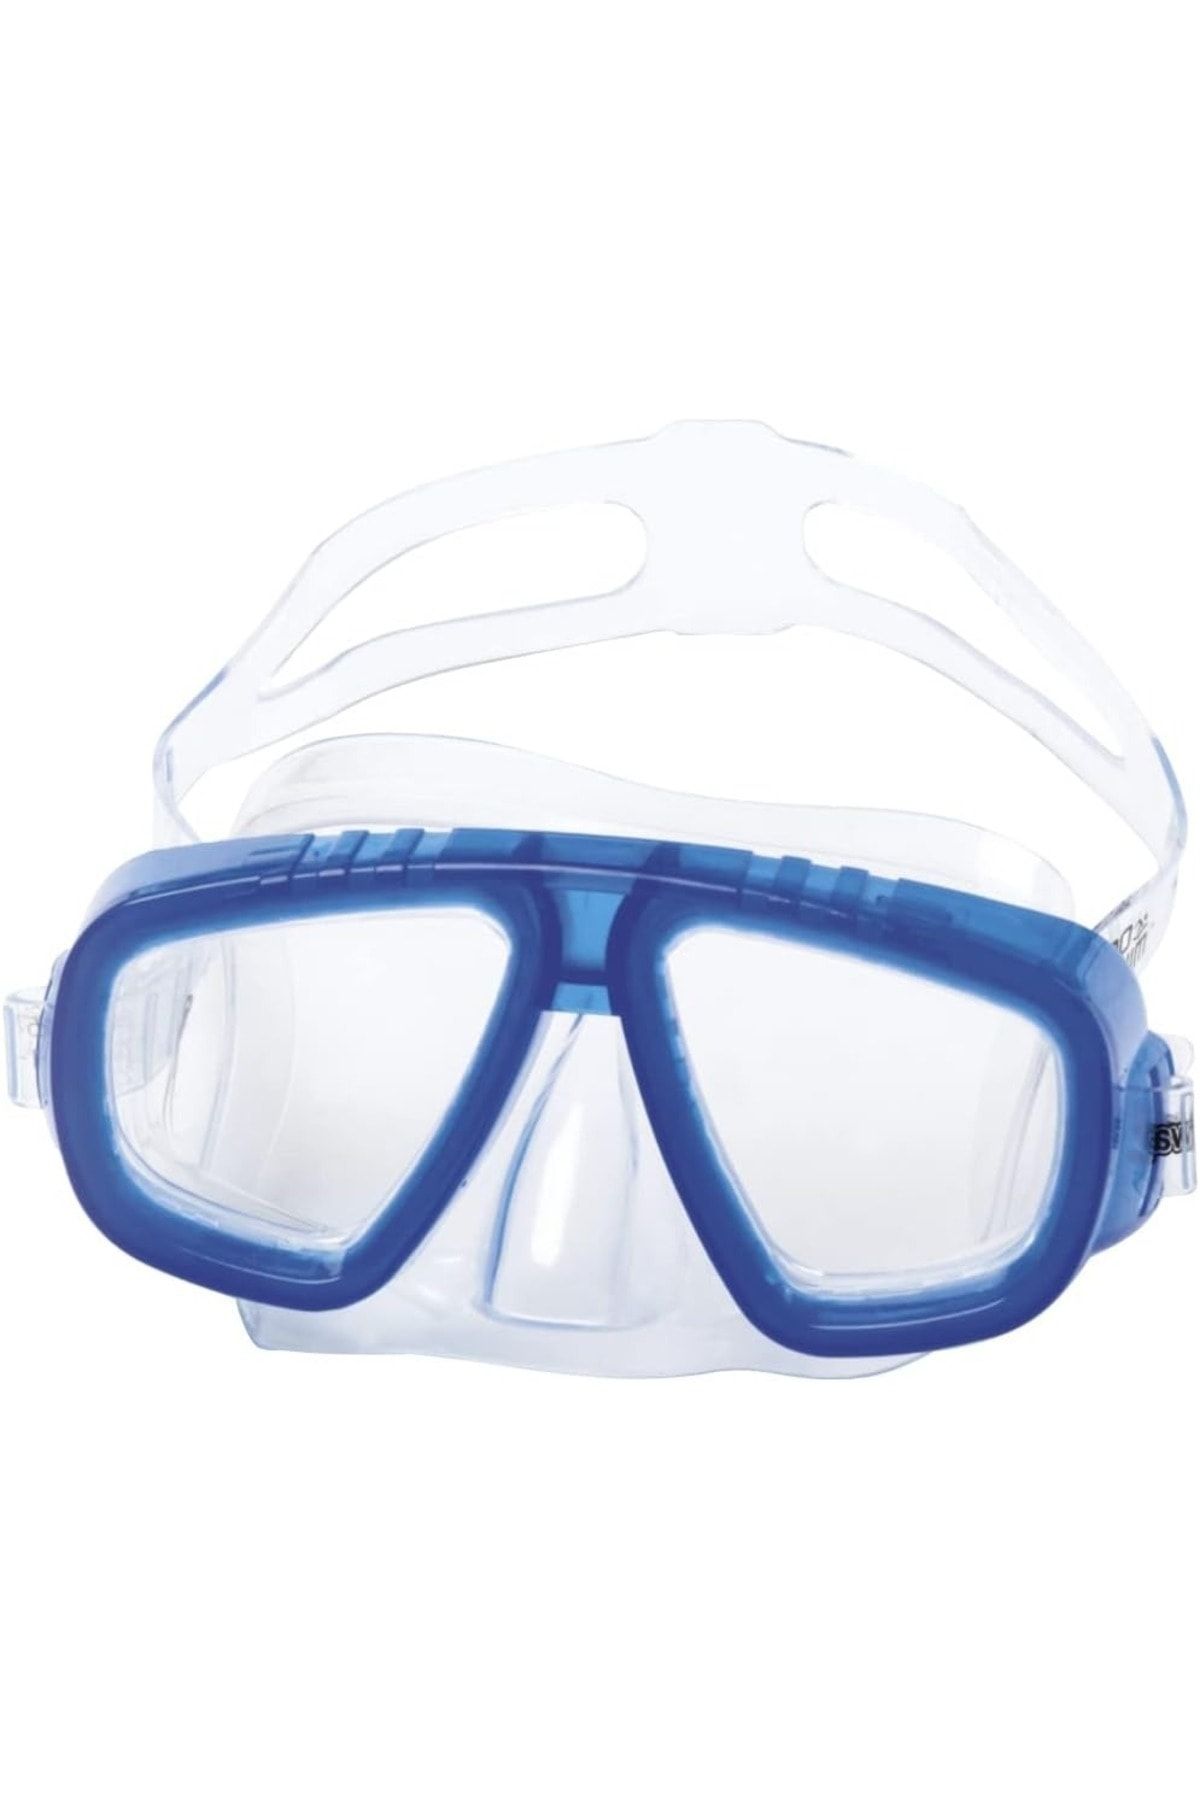 Efna Store Bestway Çocuk Dalış Gözlüğü 3-7 Yaş Arası Uv Korumalı Polikarbon Lensler Ayarlanabilir Baş Lastiği